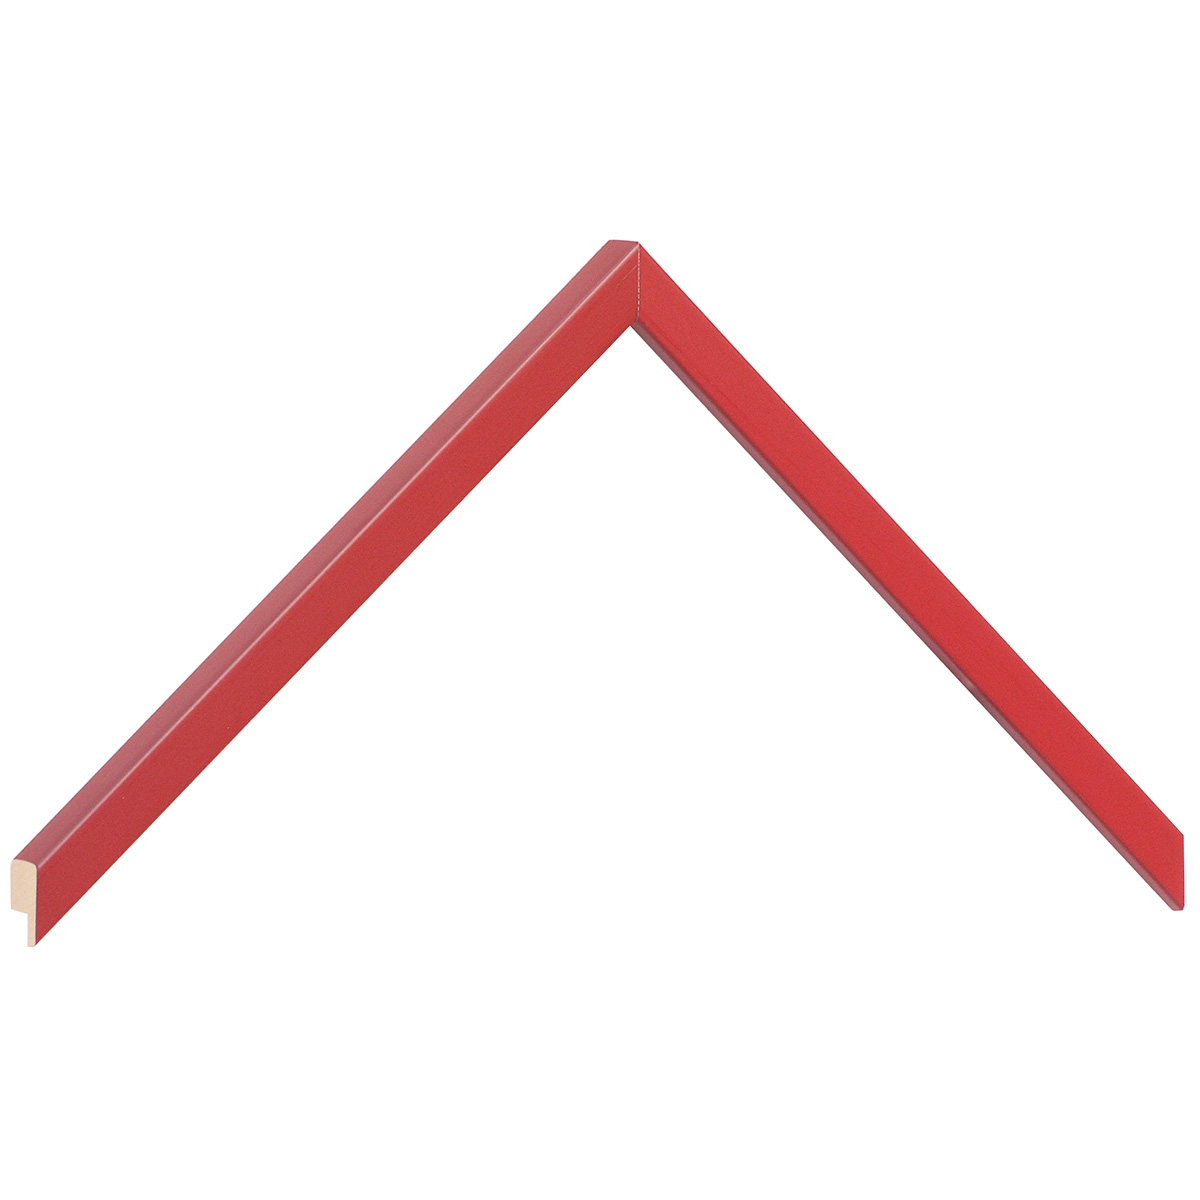 Profil ramin plat 10 mm - finisaj mat - culoare roșu - Mostră